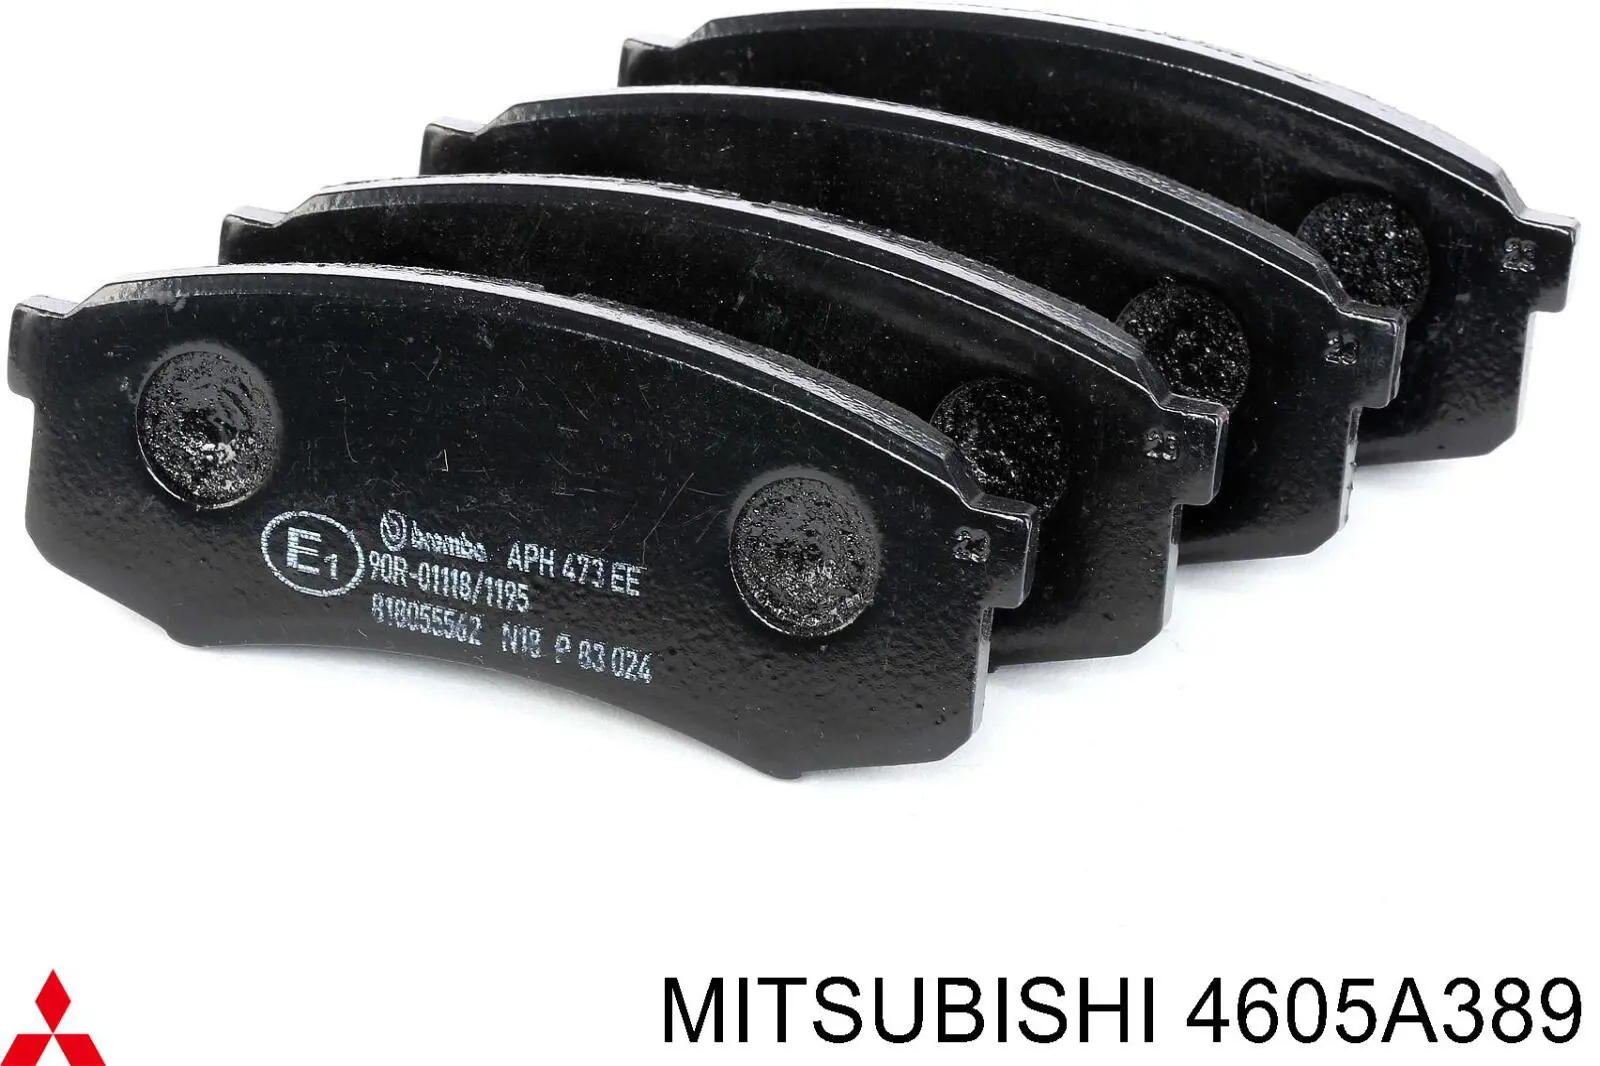 4605A389 Mitsubishi pastillas de freno traseras